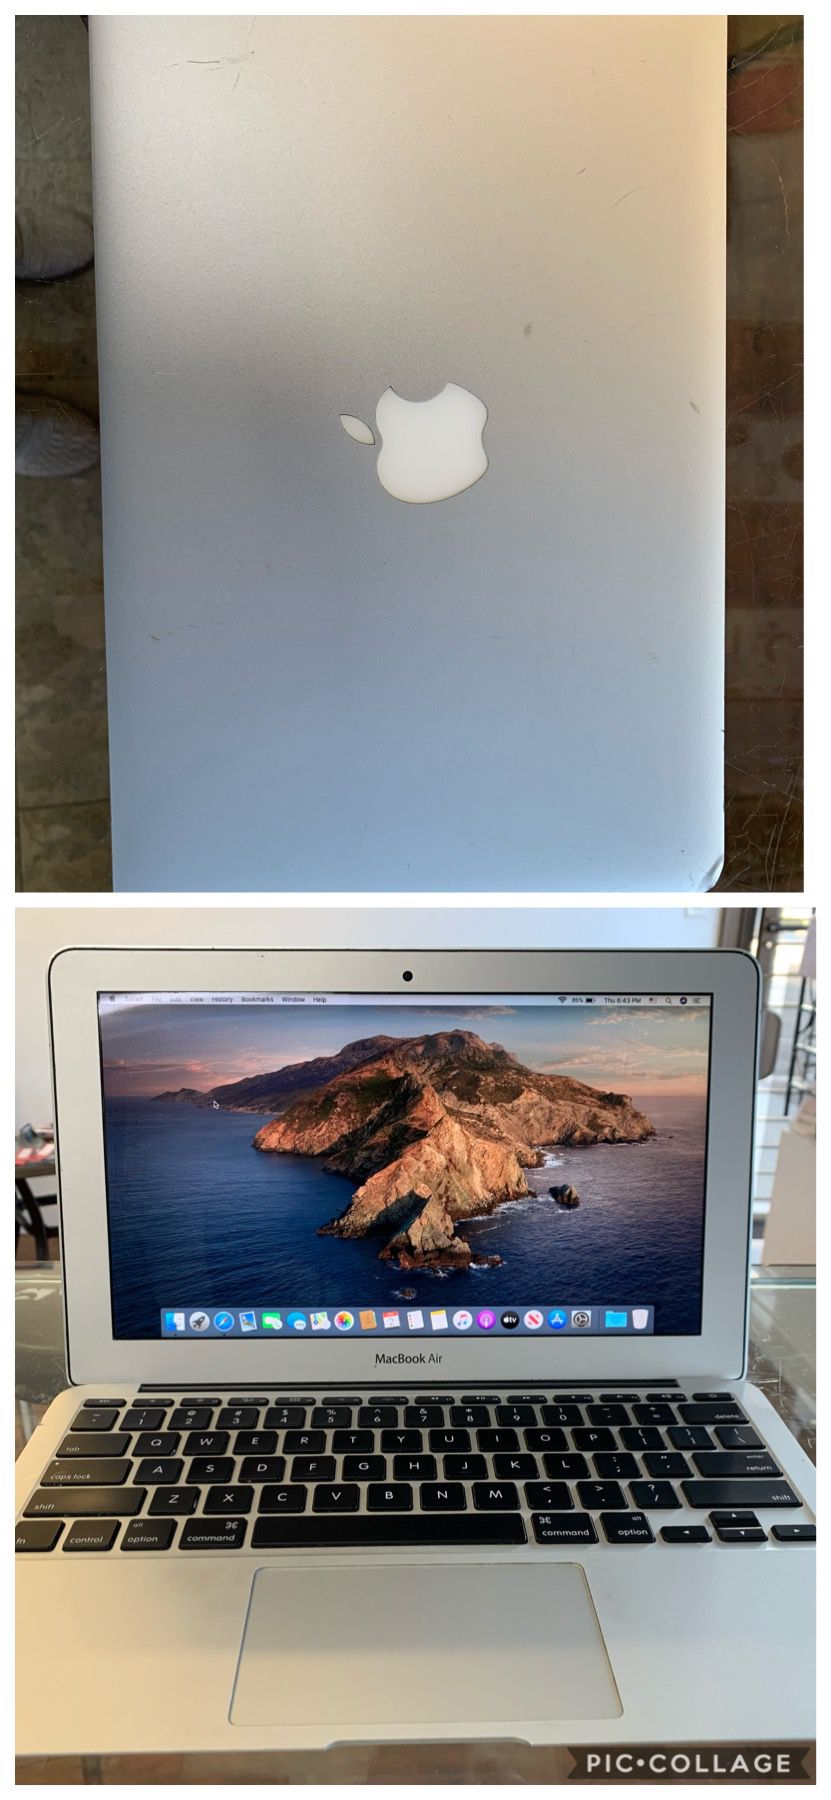 Apple macbook air 11” 2014. I5, 4gb RAM, 256gb SSD.